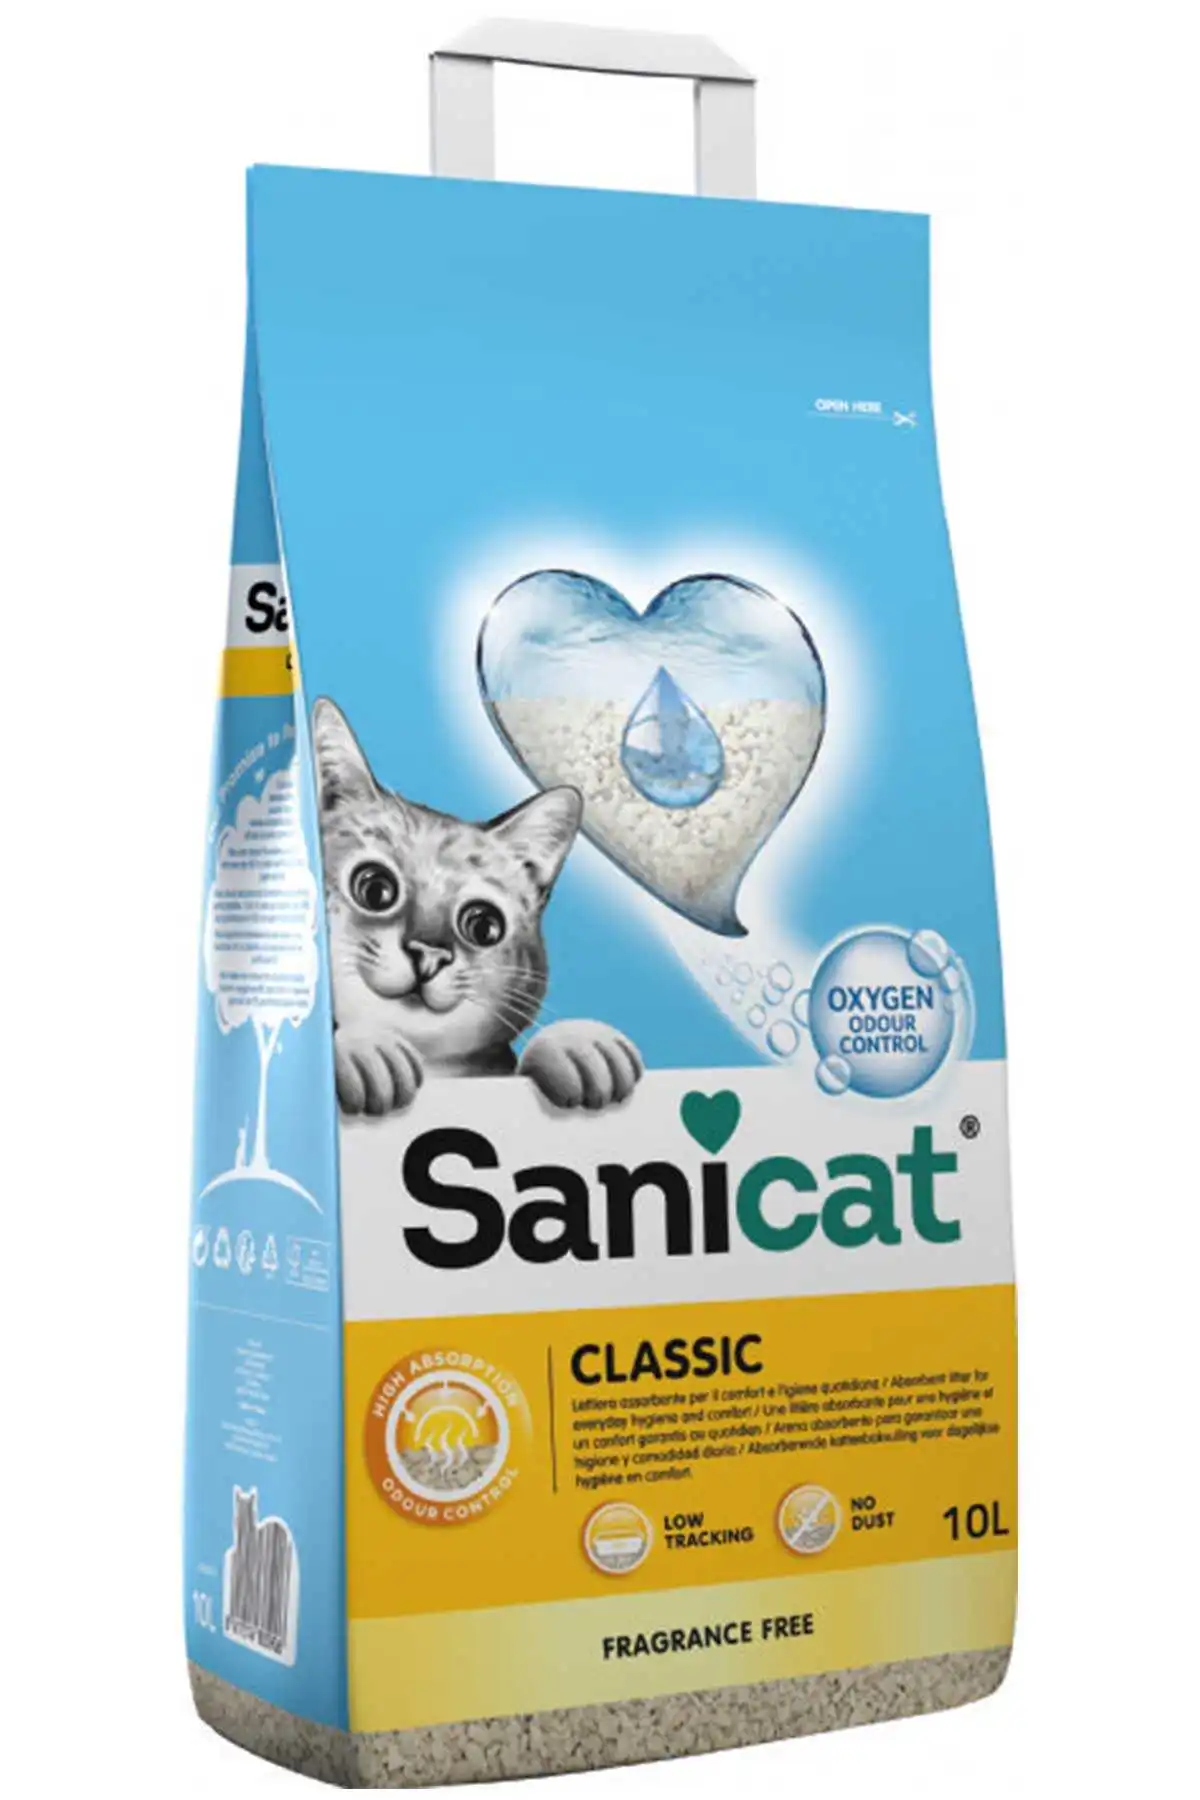 Sanicat Classic Oksijen Kontrollü Hızlı Topaklanan Kedi Kumu 10lt